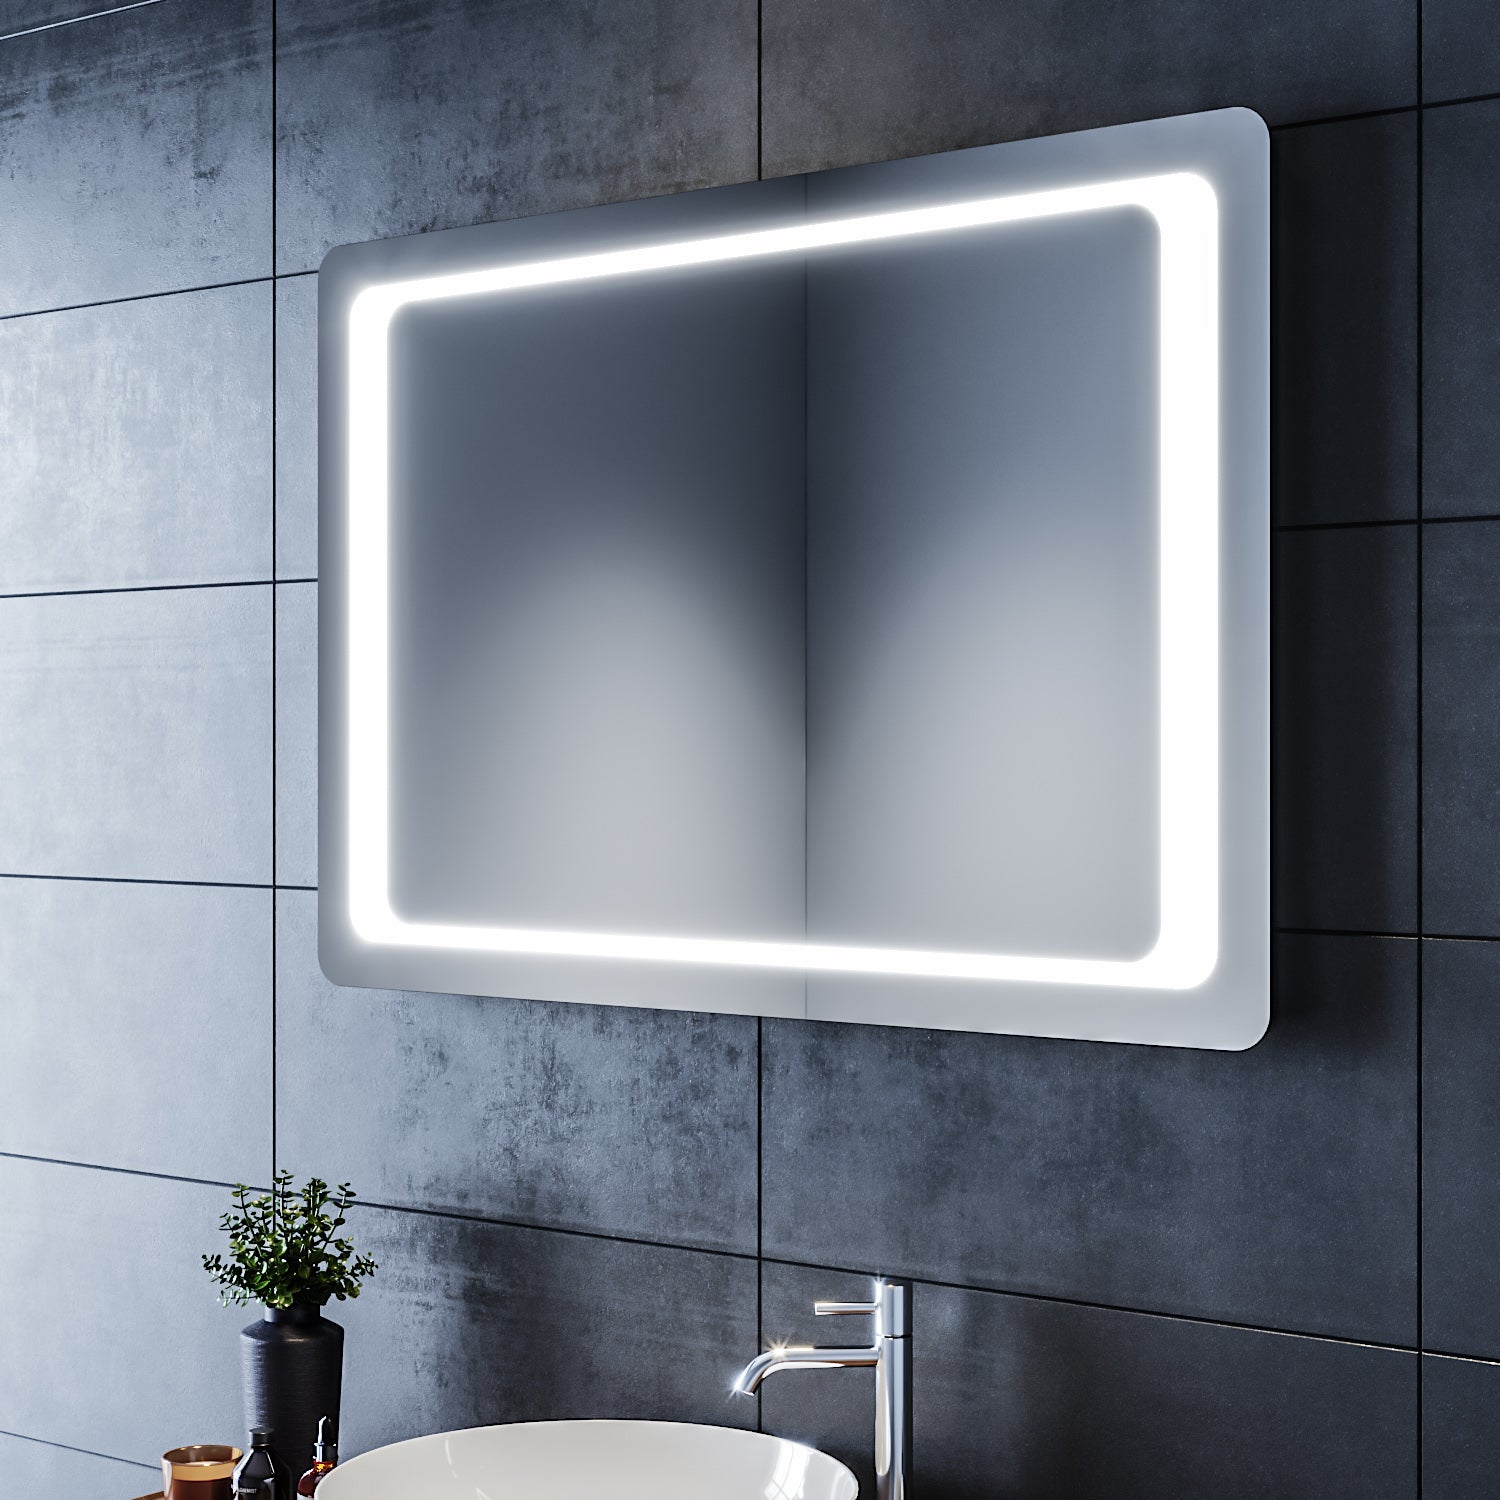 SIRHONA Miroir LED Salle de Bains avec éclairage LED Miroir Muraux AVCE Anti-buée Fonction Cosmétiques Mural Lumière Illumination - SIRHONA